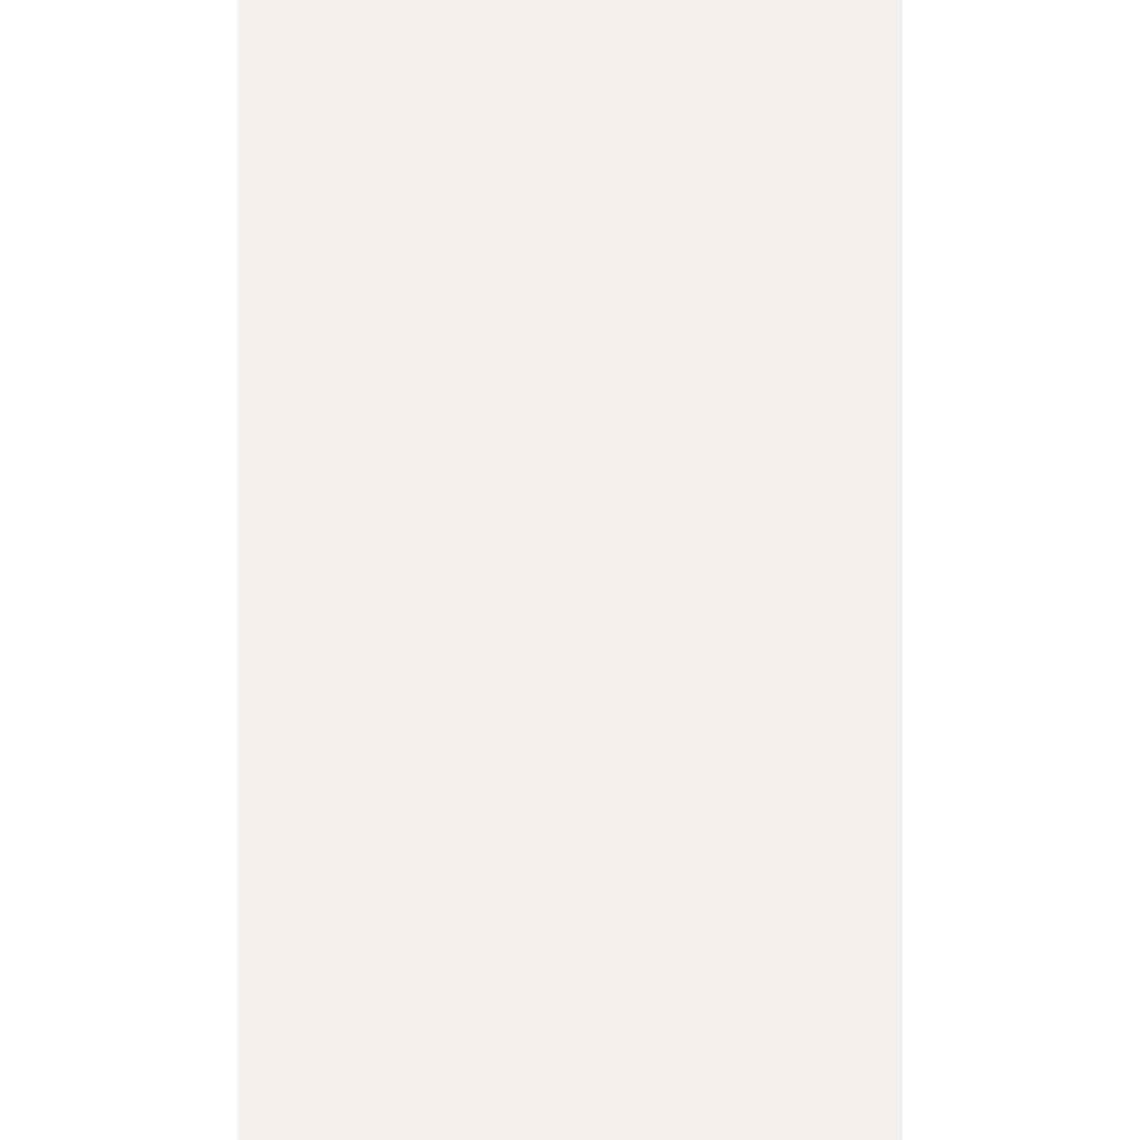 Alter - Tapis de bain, 100% Made in Italy, Tapis antitache avec impression numérique, Tapis antidérapant et lavable, Modèle Aidan, 120x70 cm - Tapis